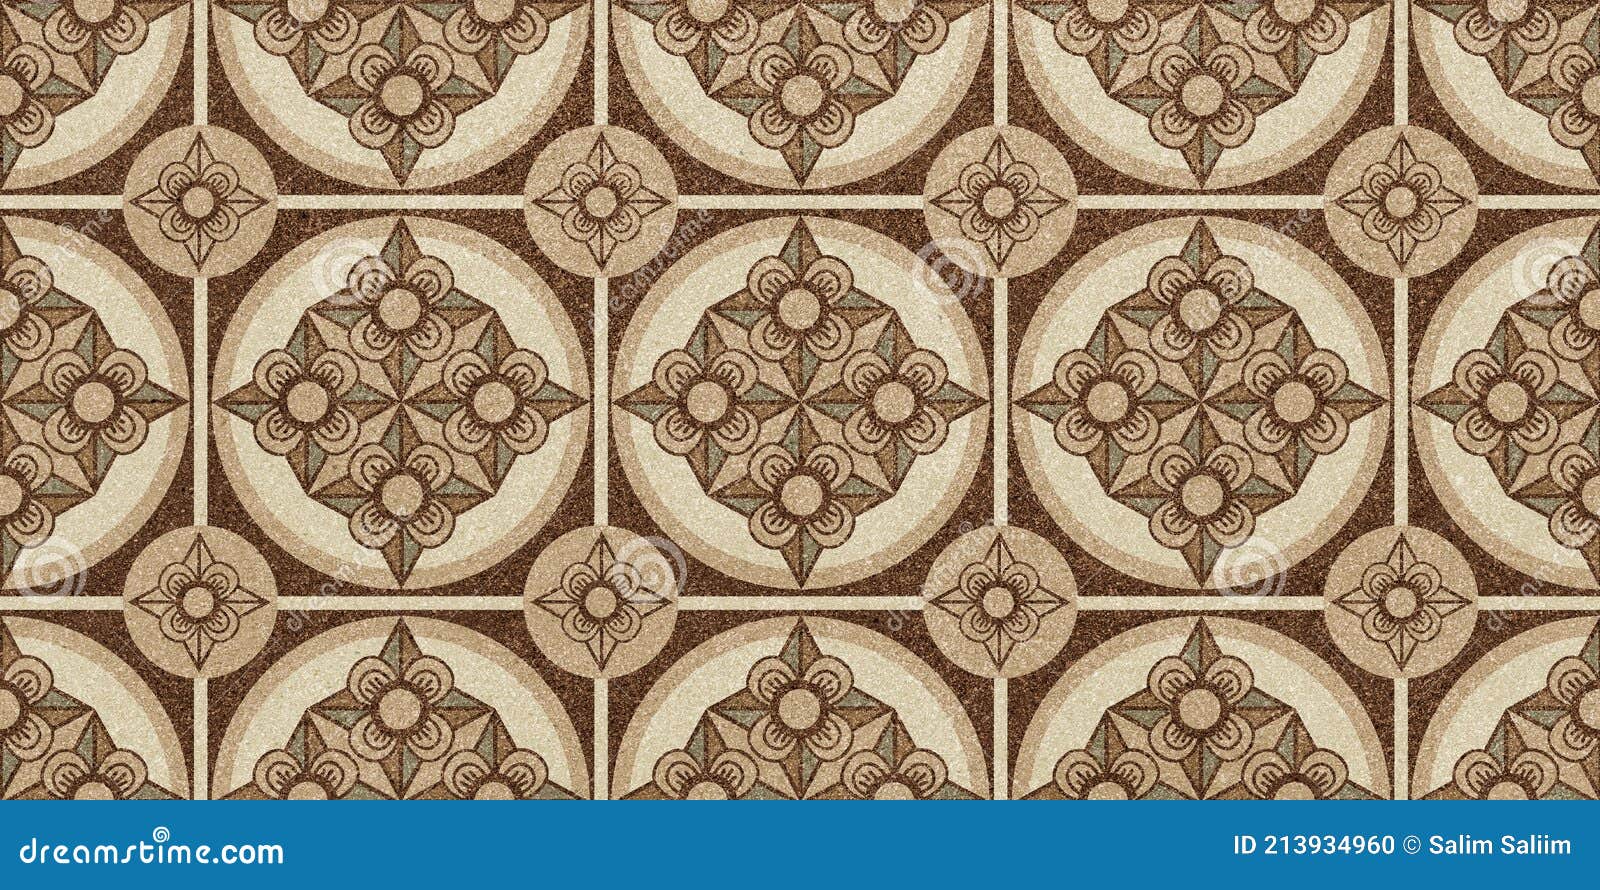 Ceramic Tile, Digital Home Decorative Art Wall Tiles Design Background for  Wallpaper. Stock Illustration - Illustration of italian, elegant: 213934960